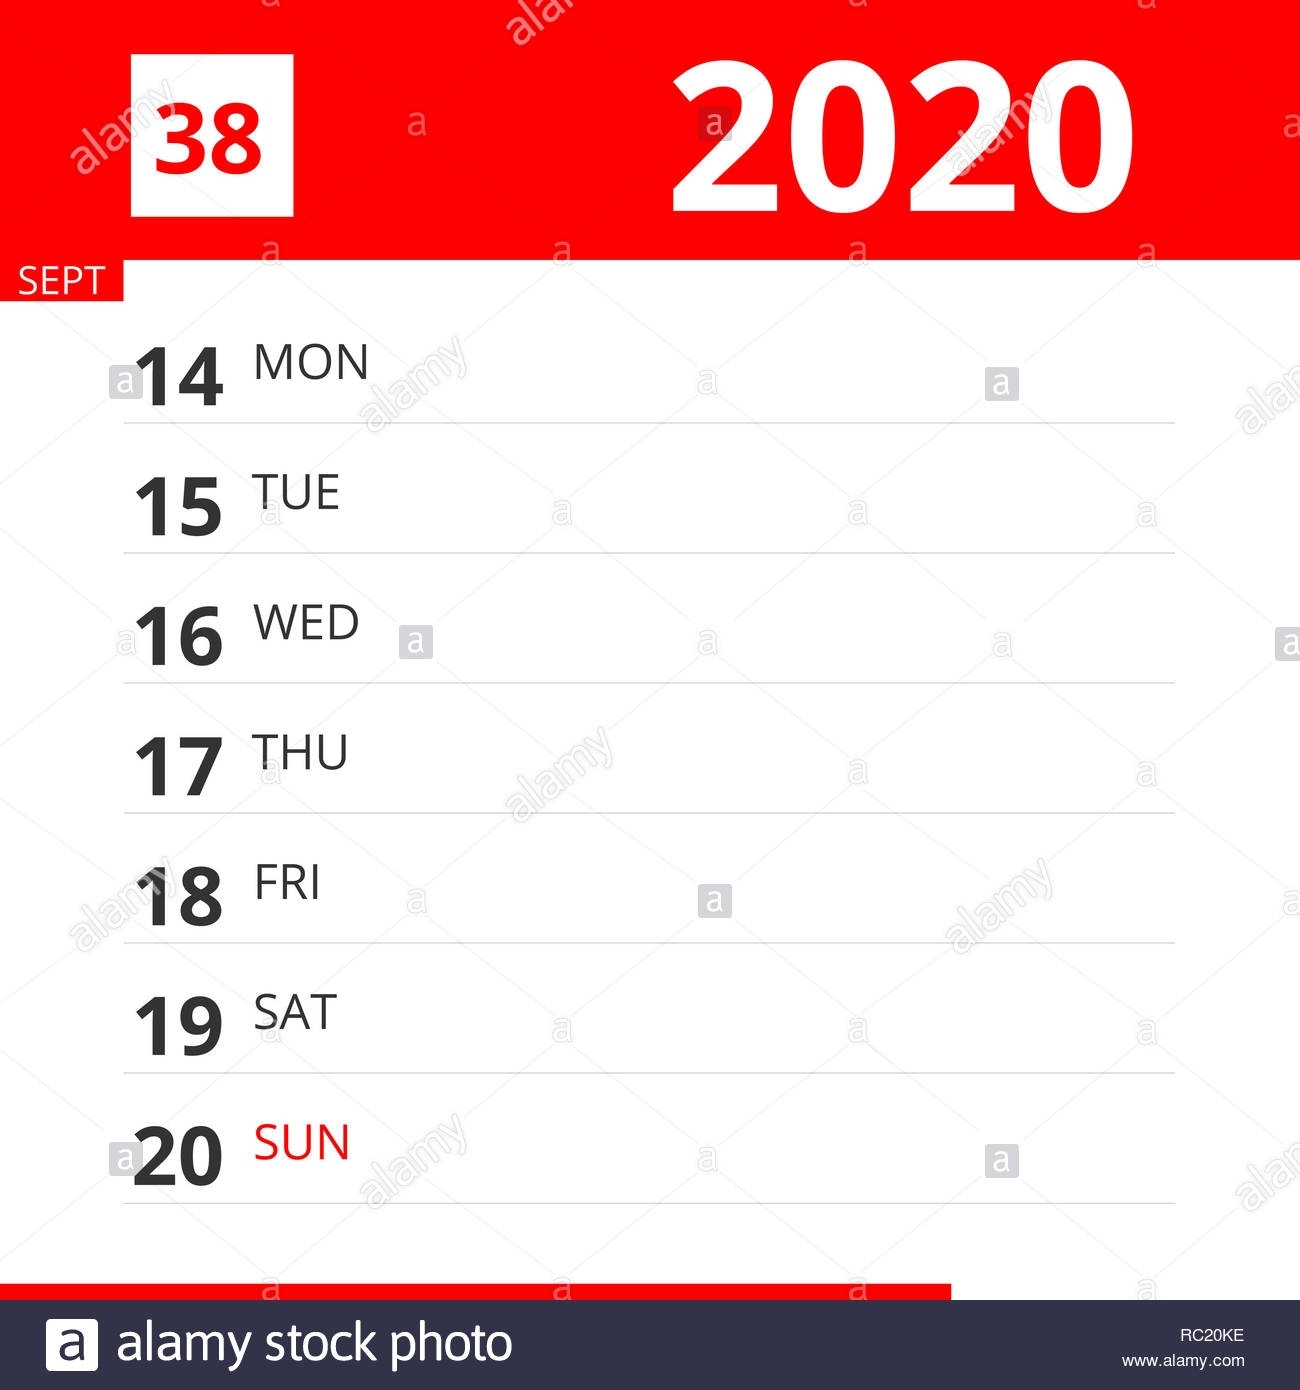 Calendar Planner For Week 38 In 2020, Ends September 20